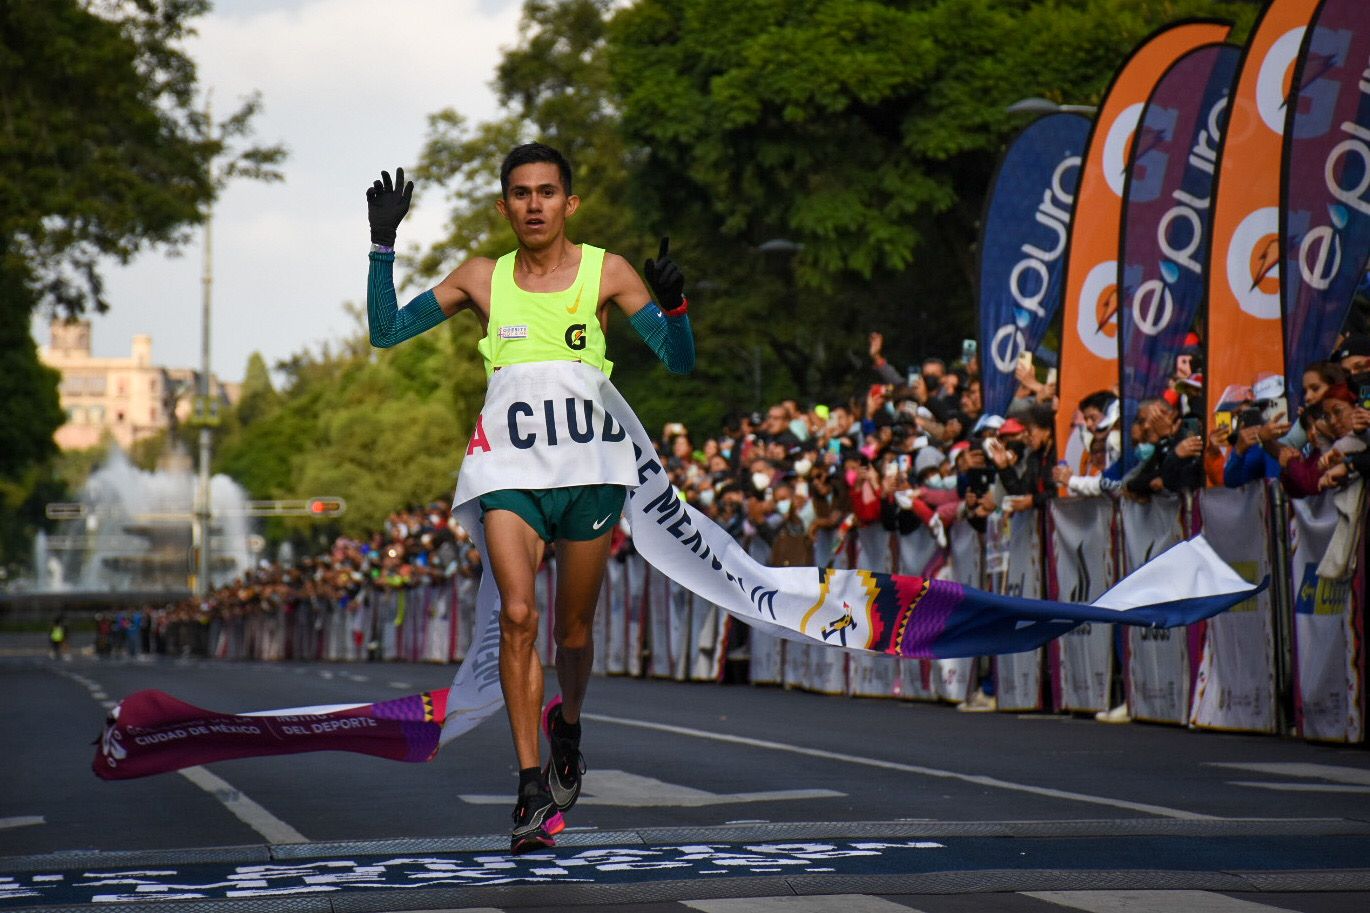 Revive las mejores imágenes del Medio Maratón de la CDMX